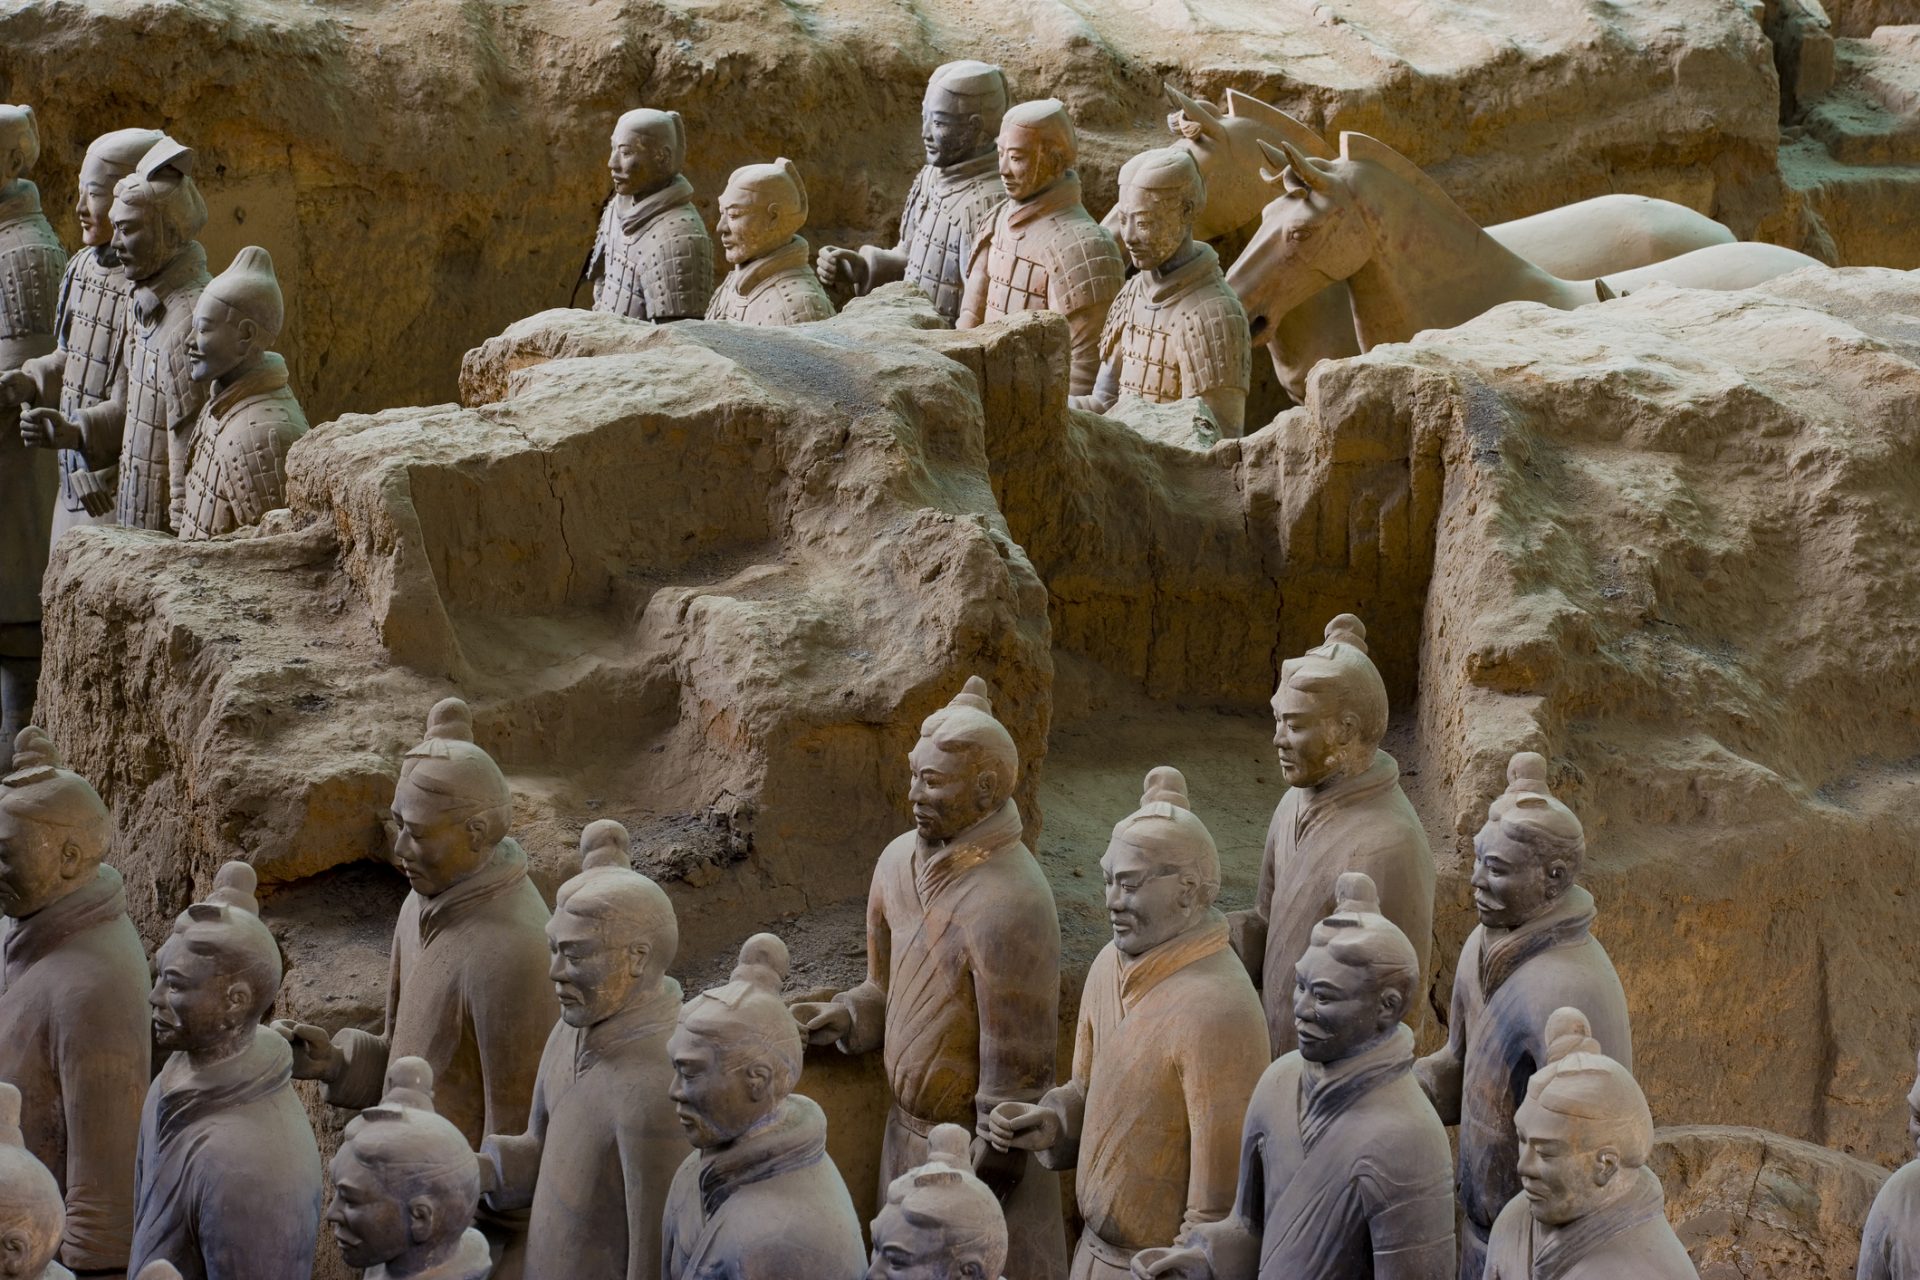 9. Qin Shi Huang Di’s Terracotta Army in China